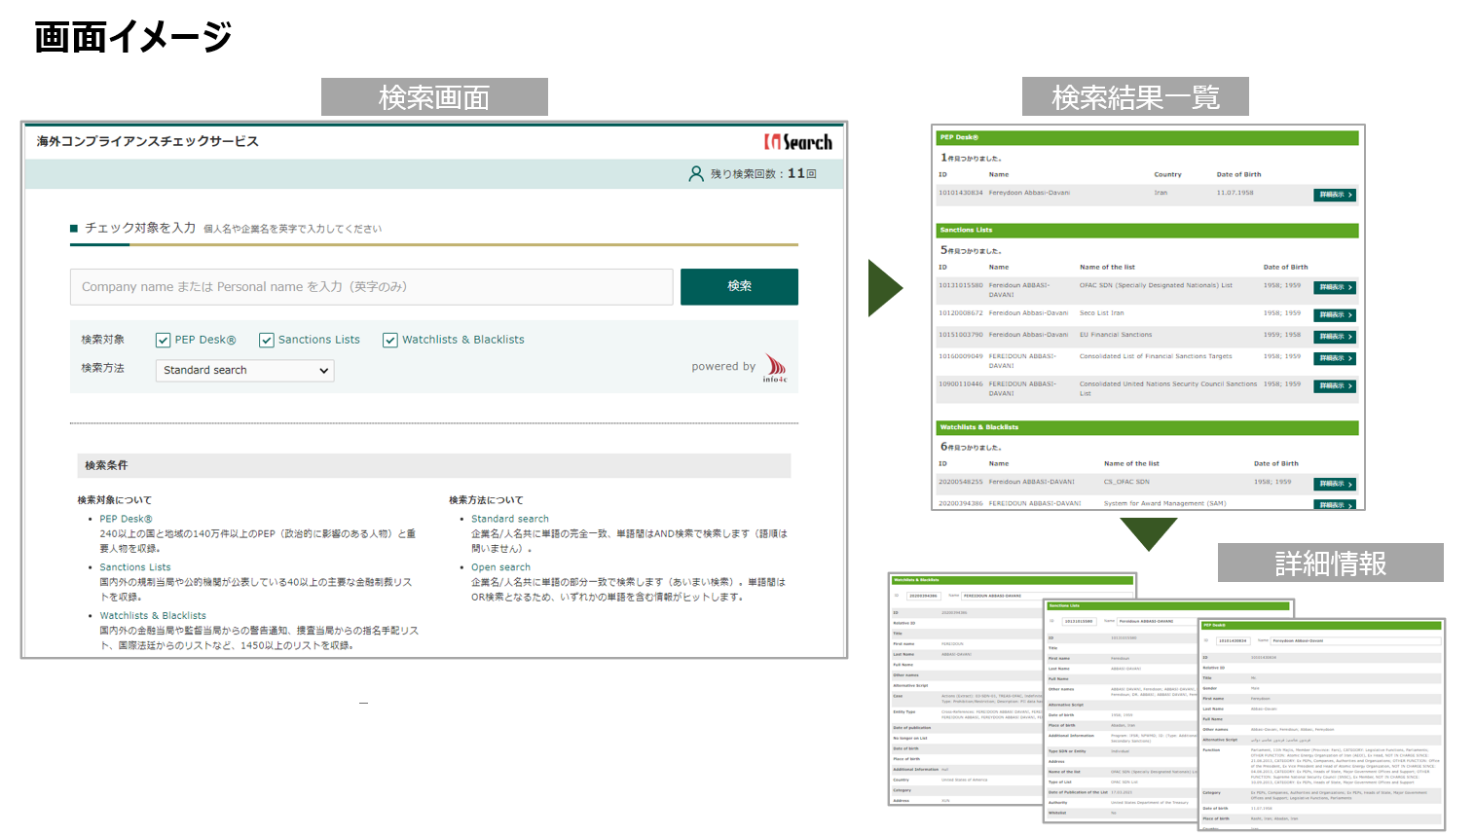 海外コンプライアンスチェックサービスの画面イメージ